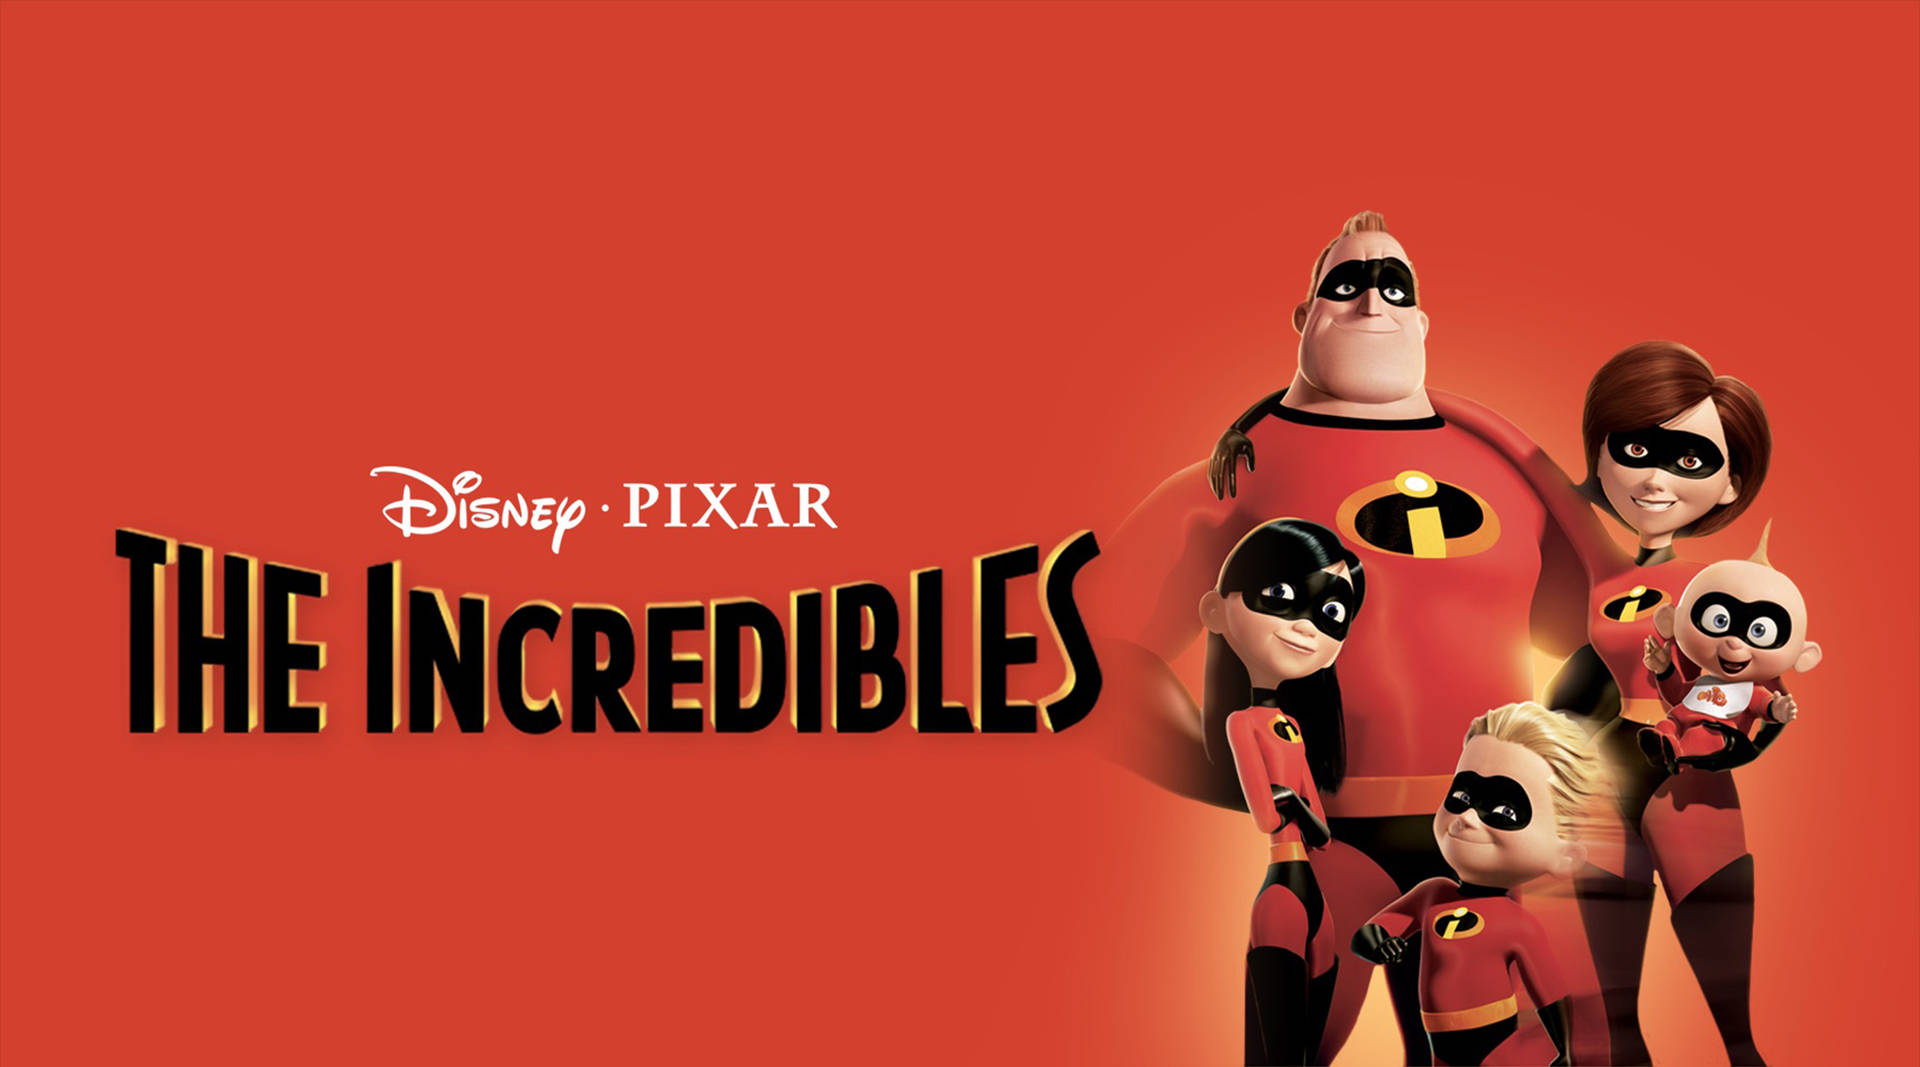 Señorincreíble De Pixar, De La Película Los Increíbles. Fondo de pantalla